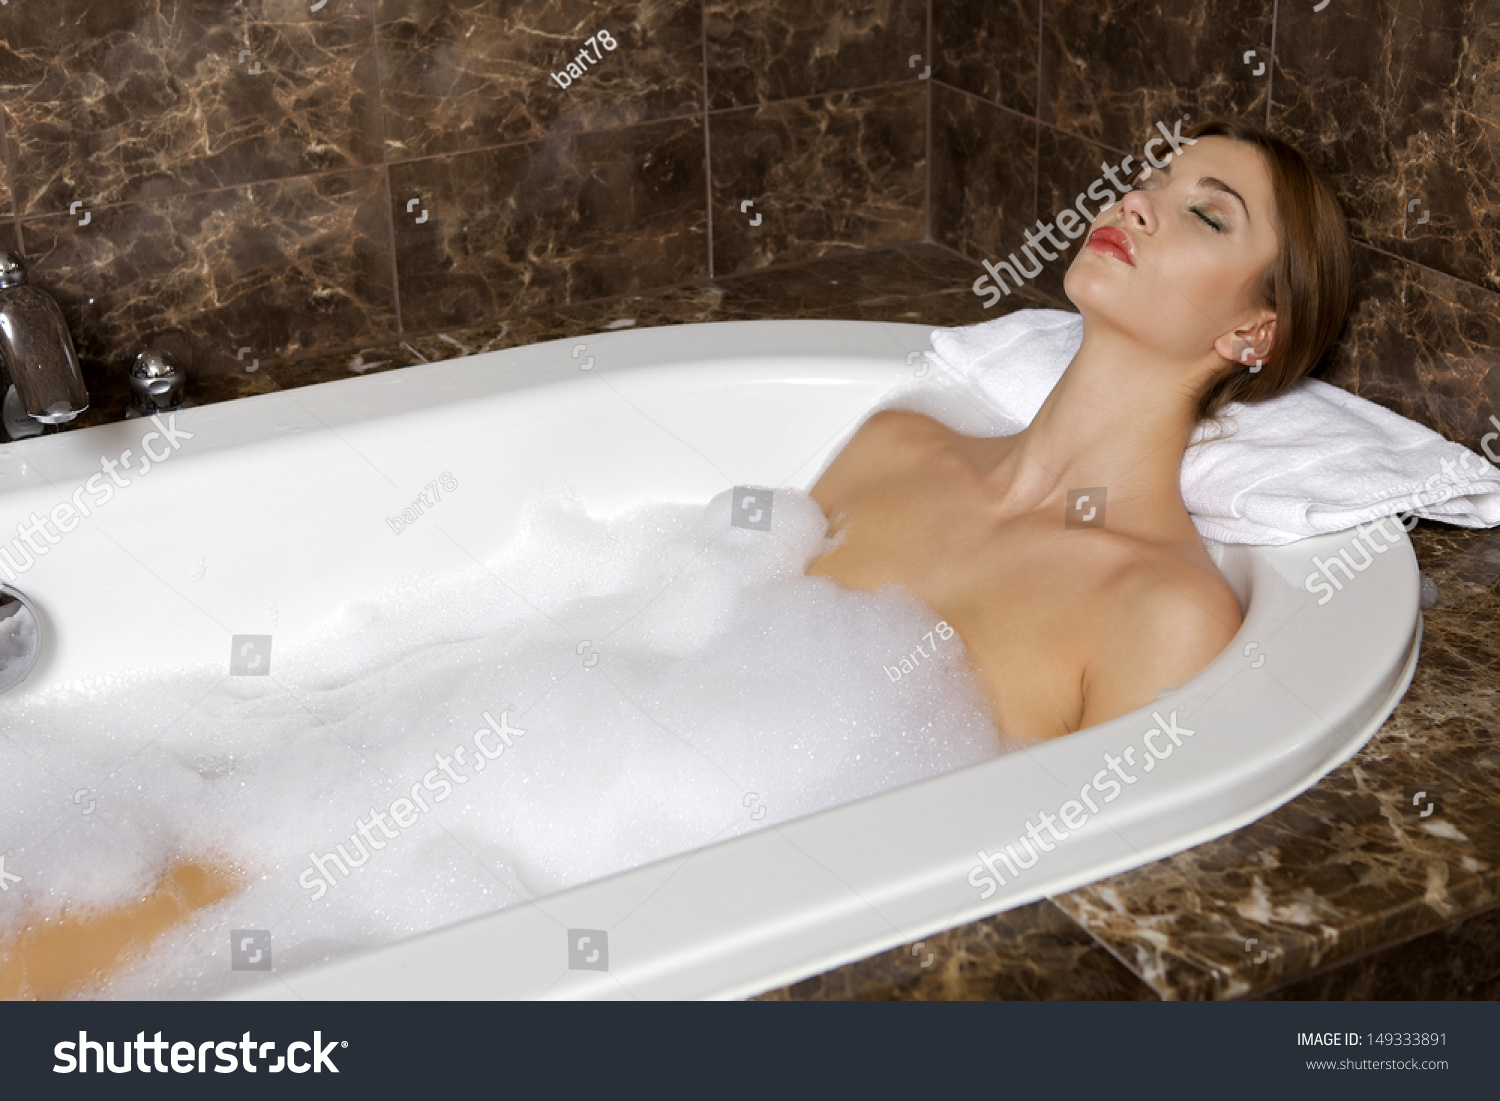 Брюнетка искупалась в ванной и показала пикантные места